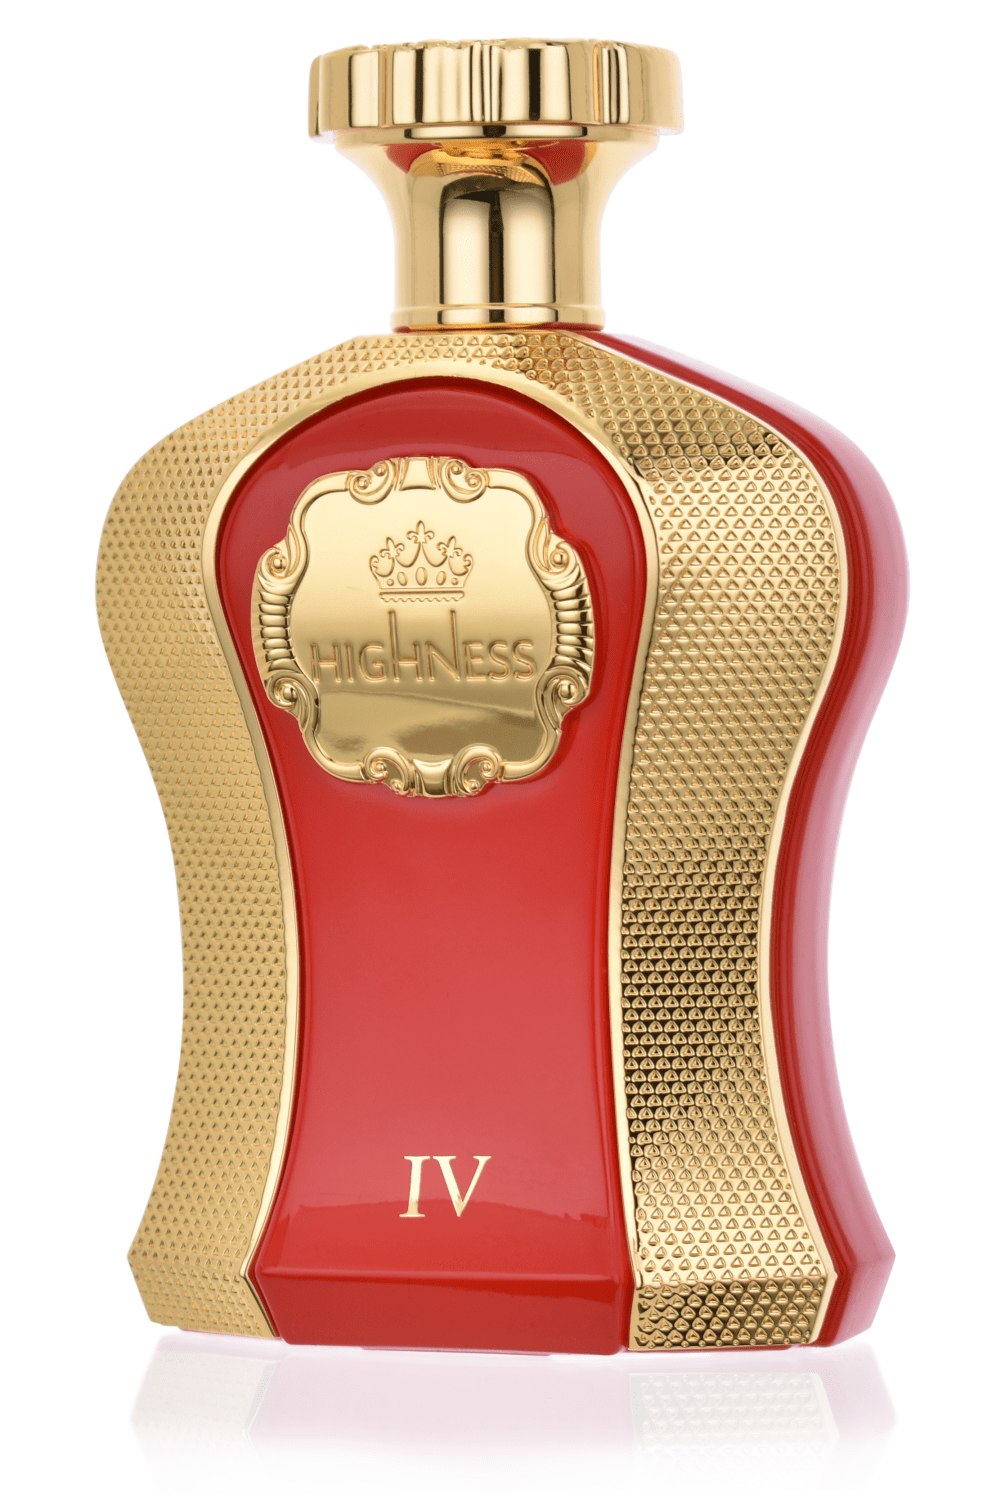 Afnan Highness IV 100 ml Eau de Parfum   